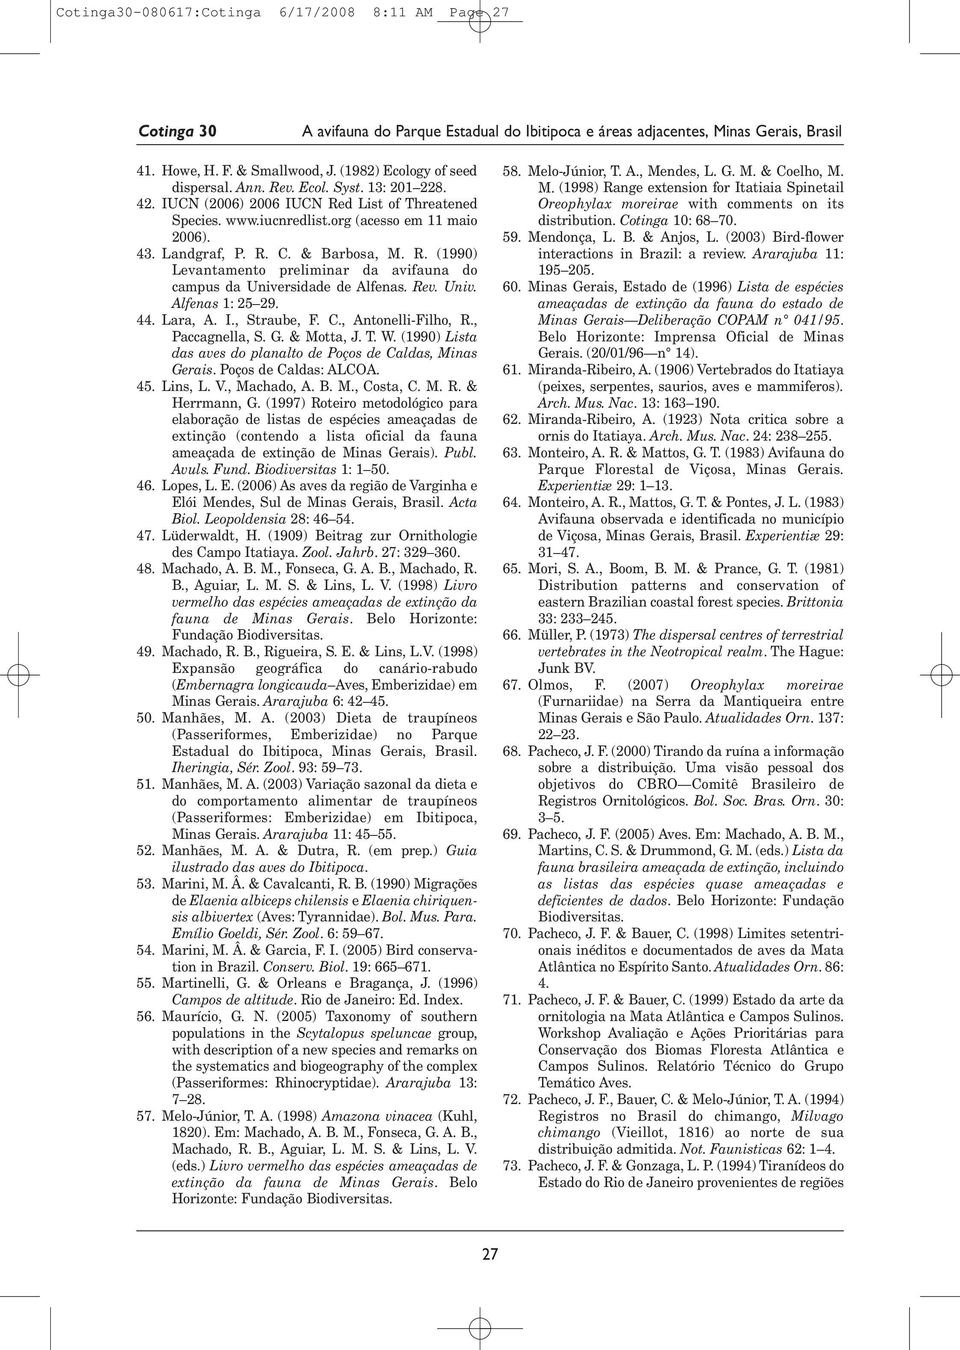 Rev. Univ. Alfenas 1: 25 29. 44. Lara, A. I., Straube, F. C., Antonelli- Filho, R., Paccagnella, S. G. & Motta, J. T. W. (1990) Lista das aves do planalto de Poços de Caldas, Minas Gerais.